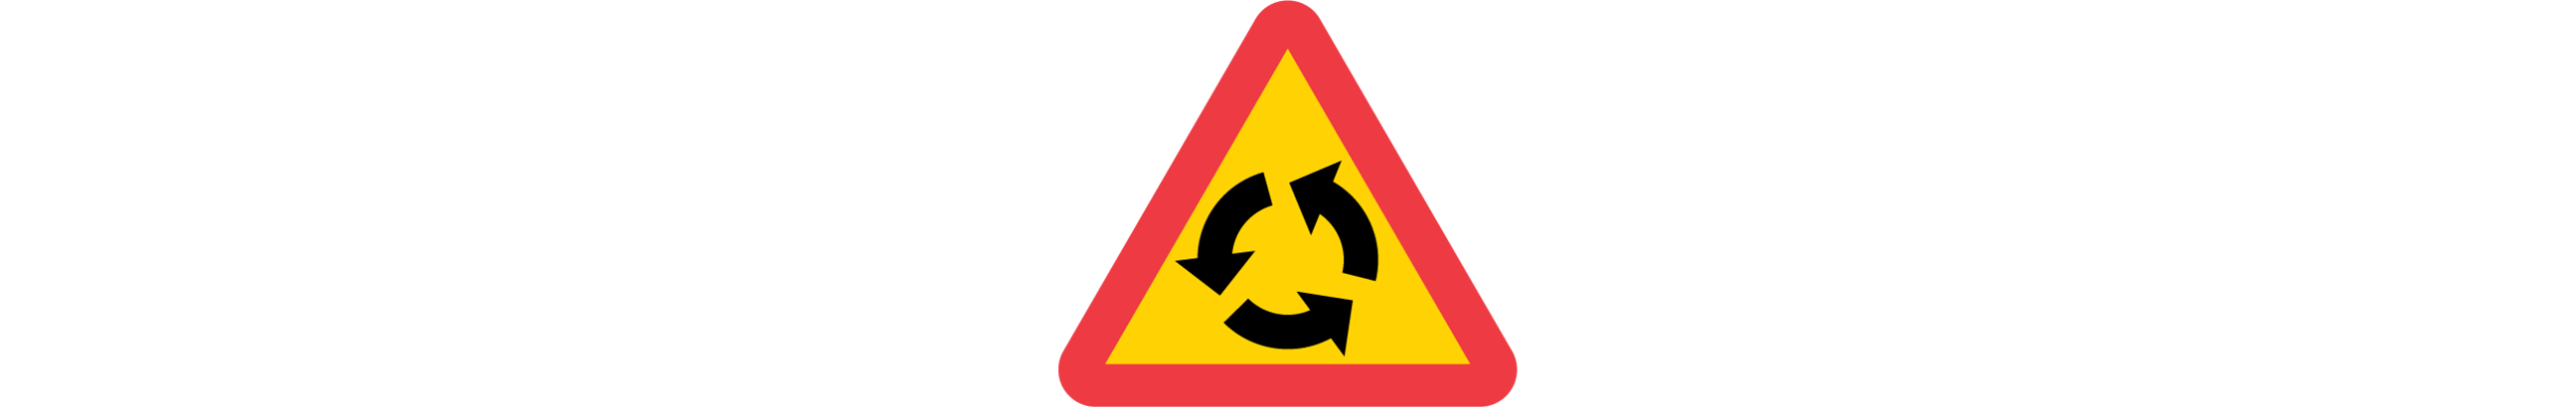 varning för cirkulationsplats